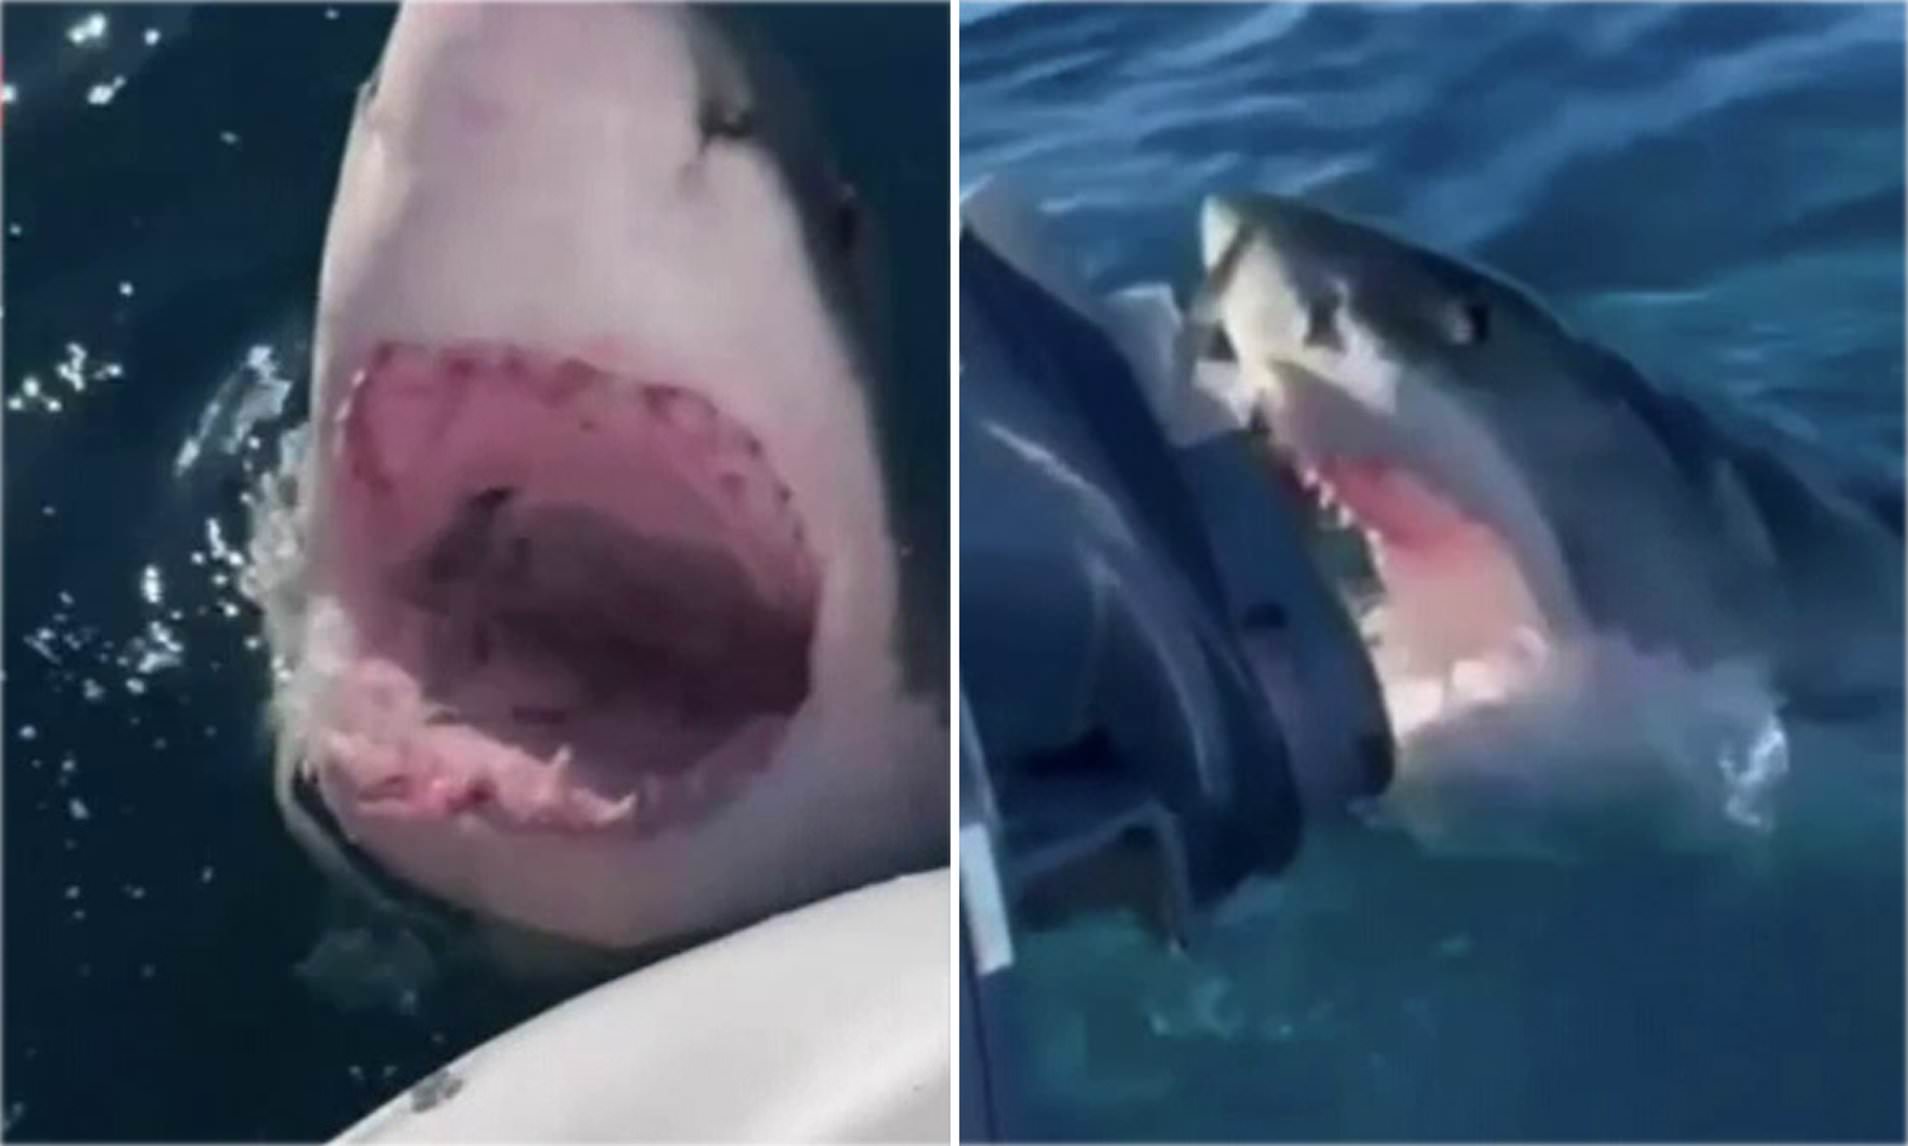 real shark attack videos